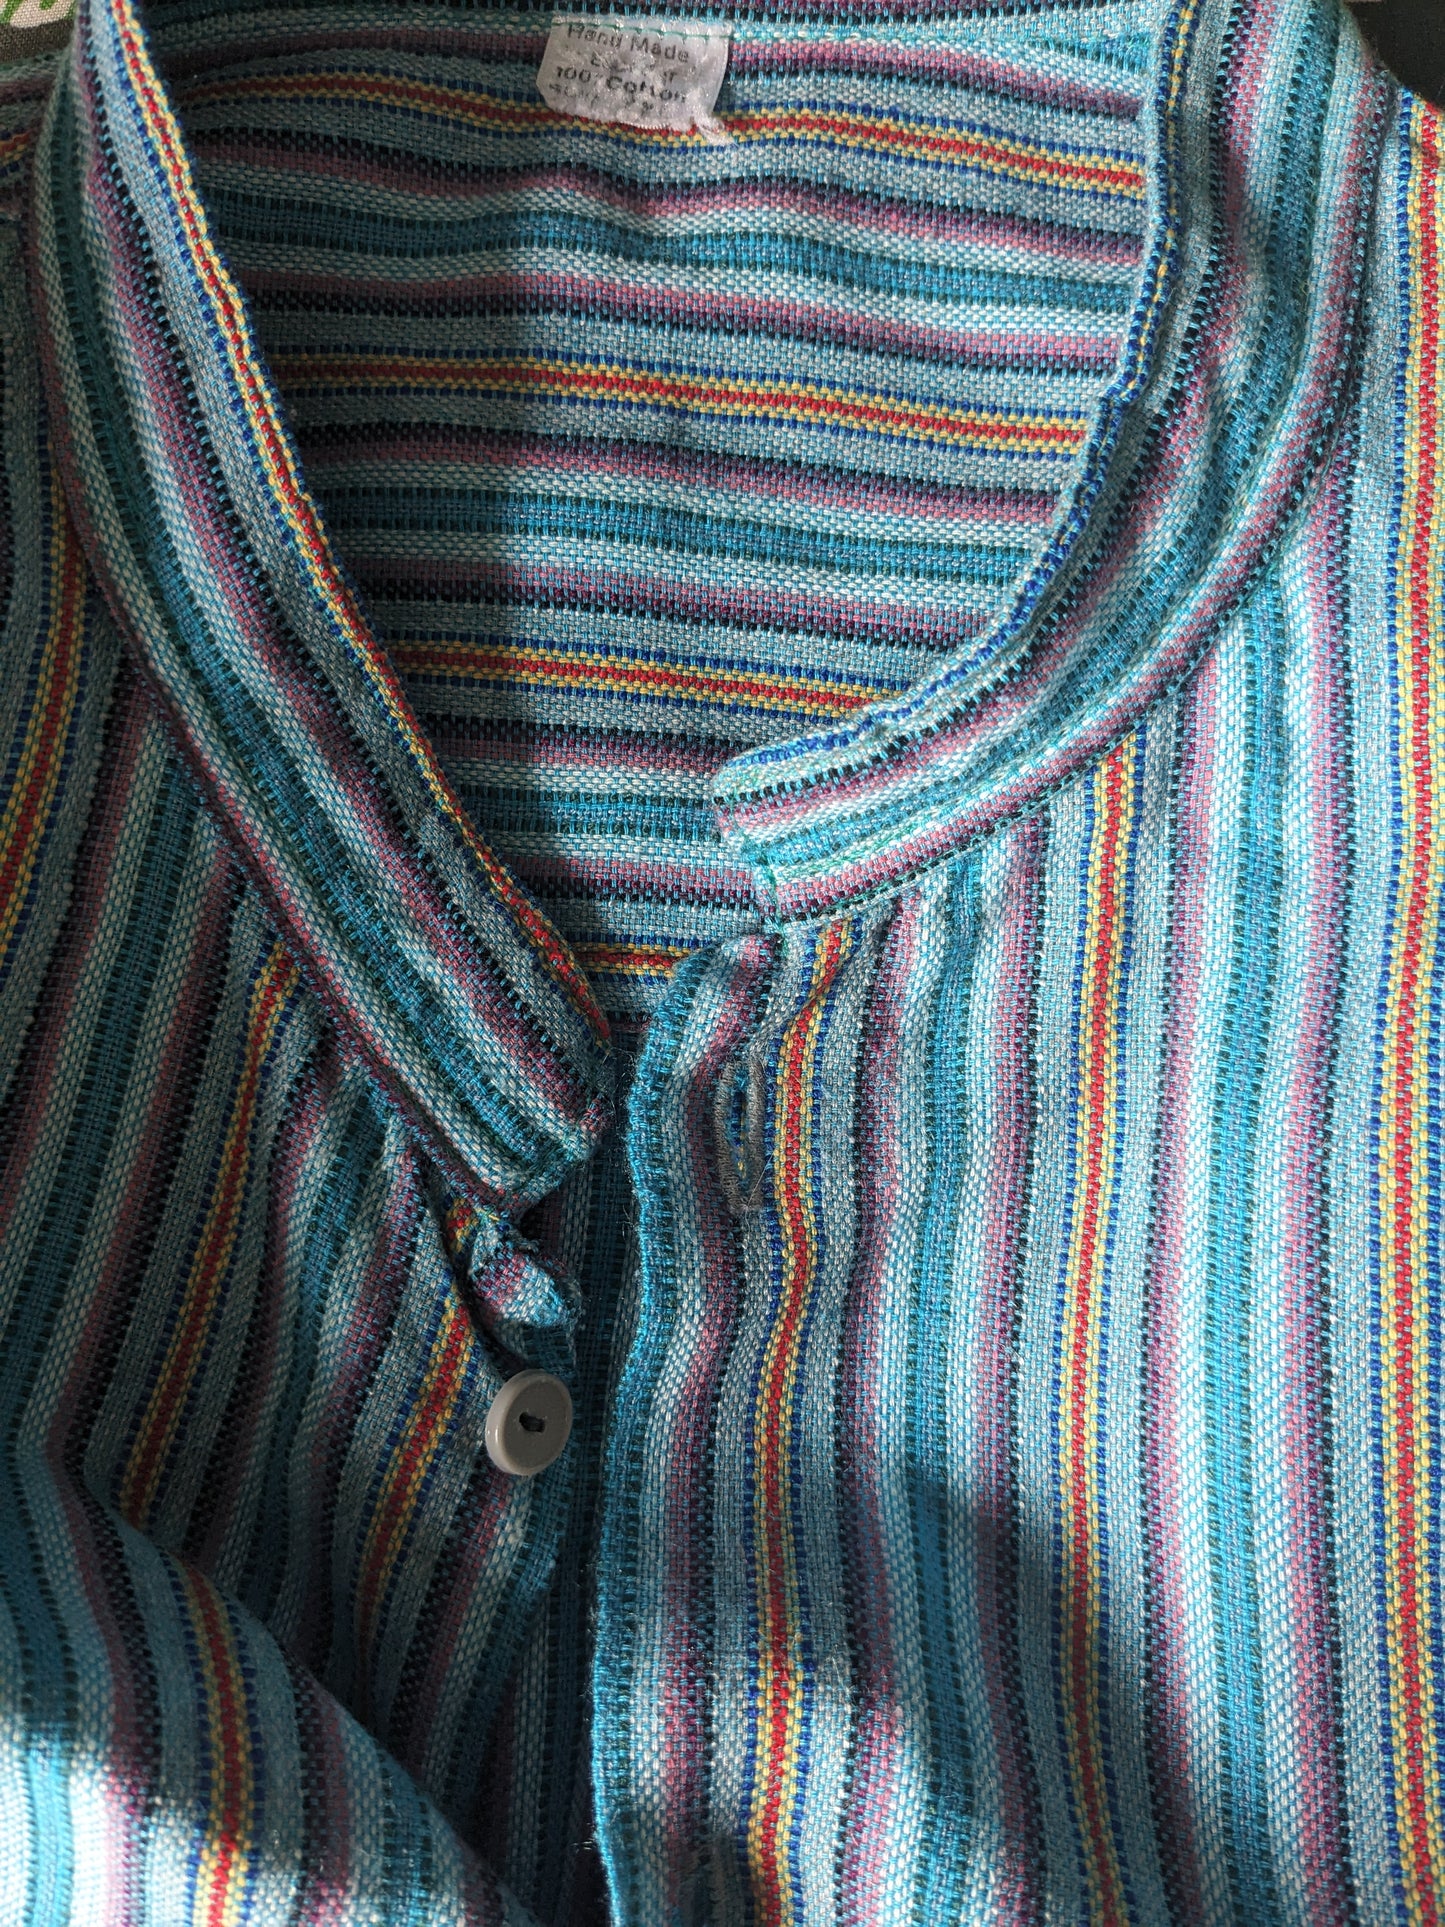 Camicia vintage con MAO / agricoltore / colletto in piedi. Strisce giallo rosso viola blu. Taglia XL.